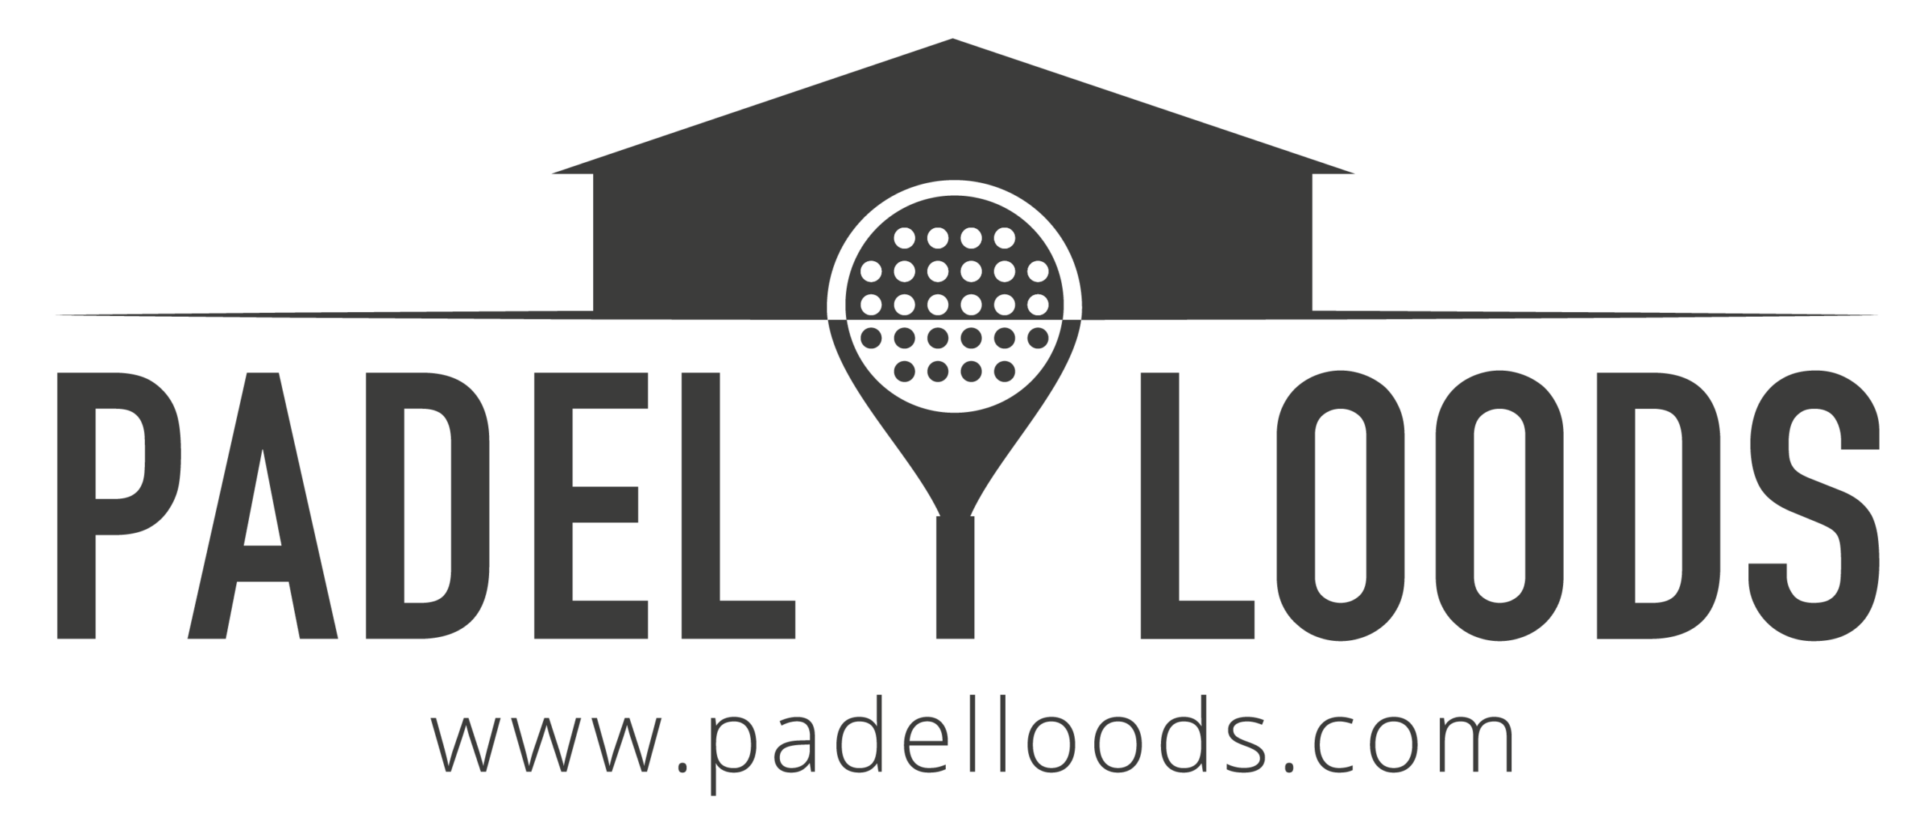 Logo Padelloods HR